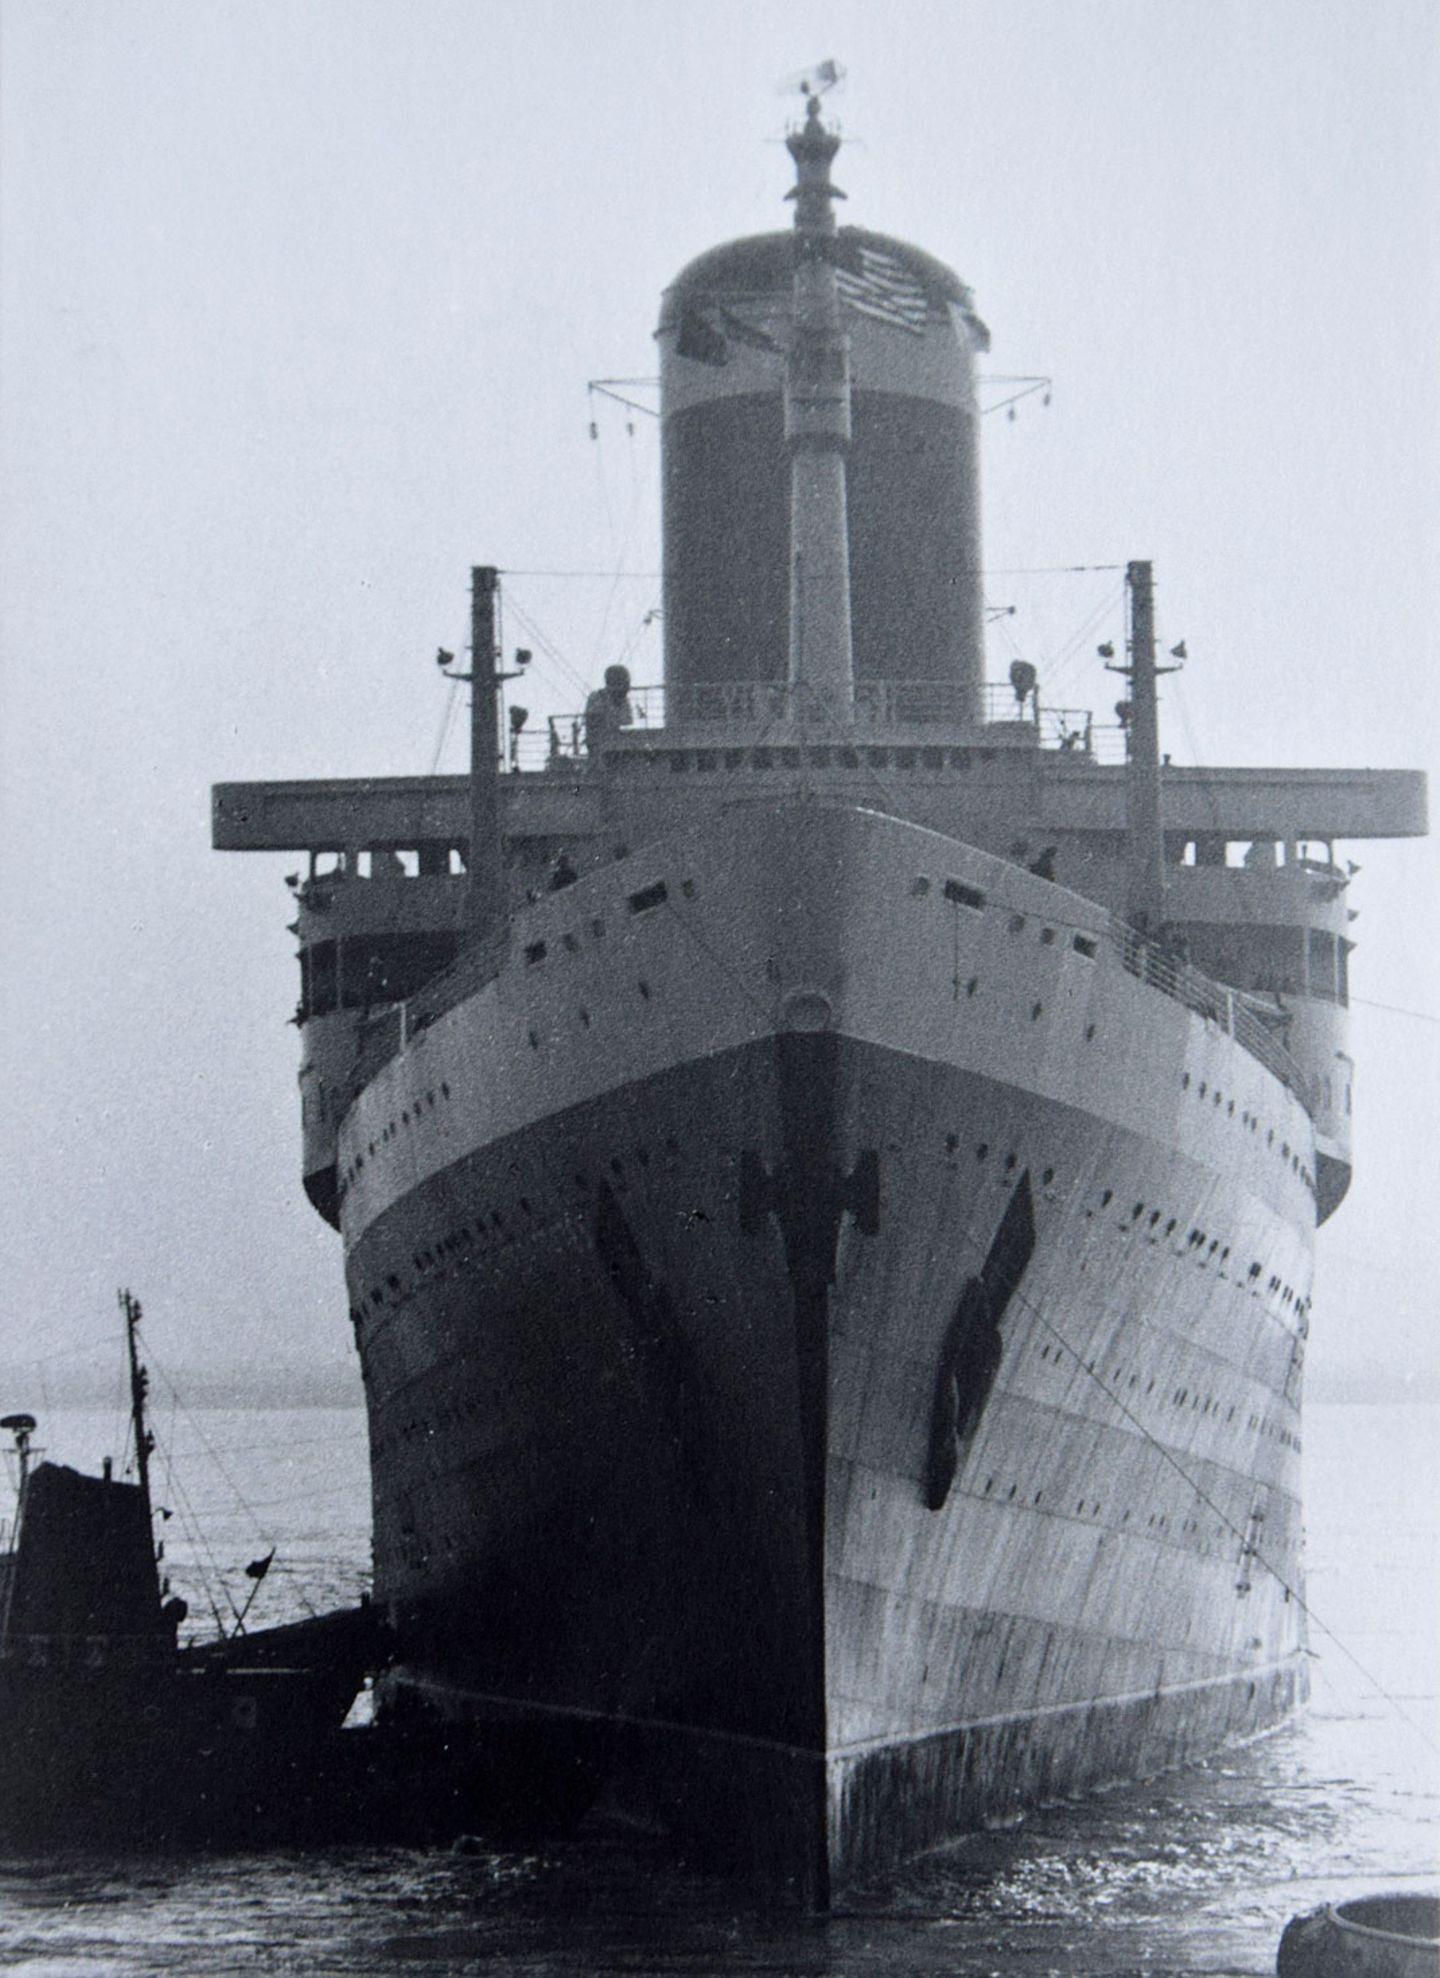 SS United States: Amerikas vergessenes Flaggschiff verrostet in